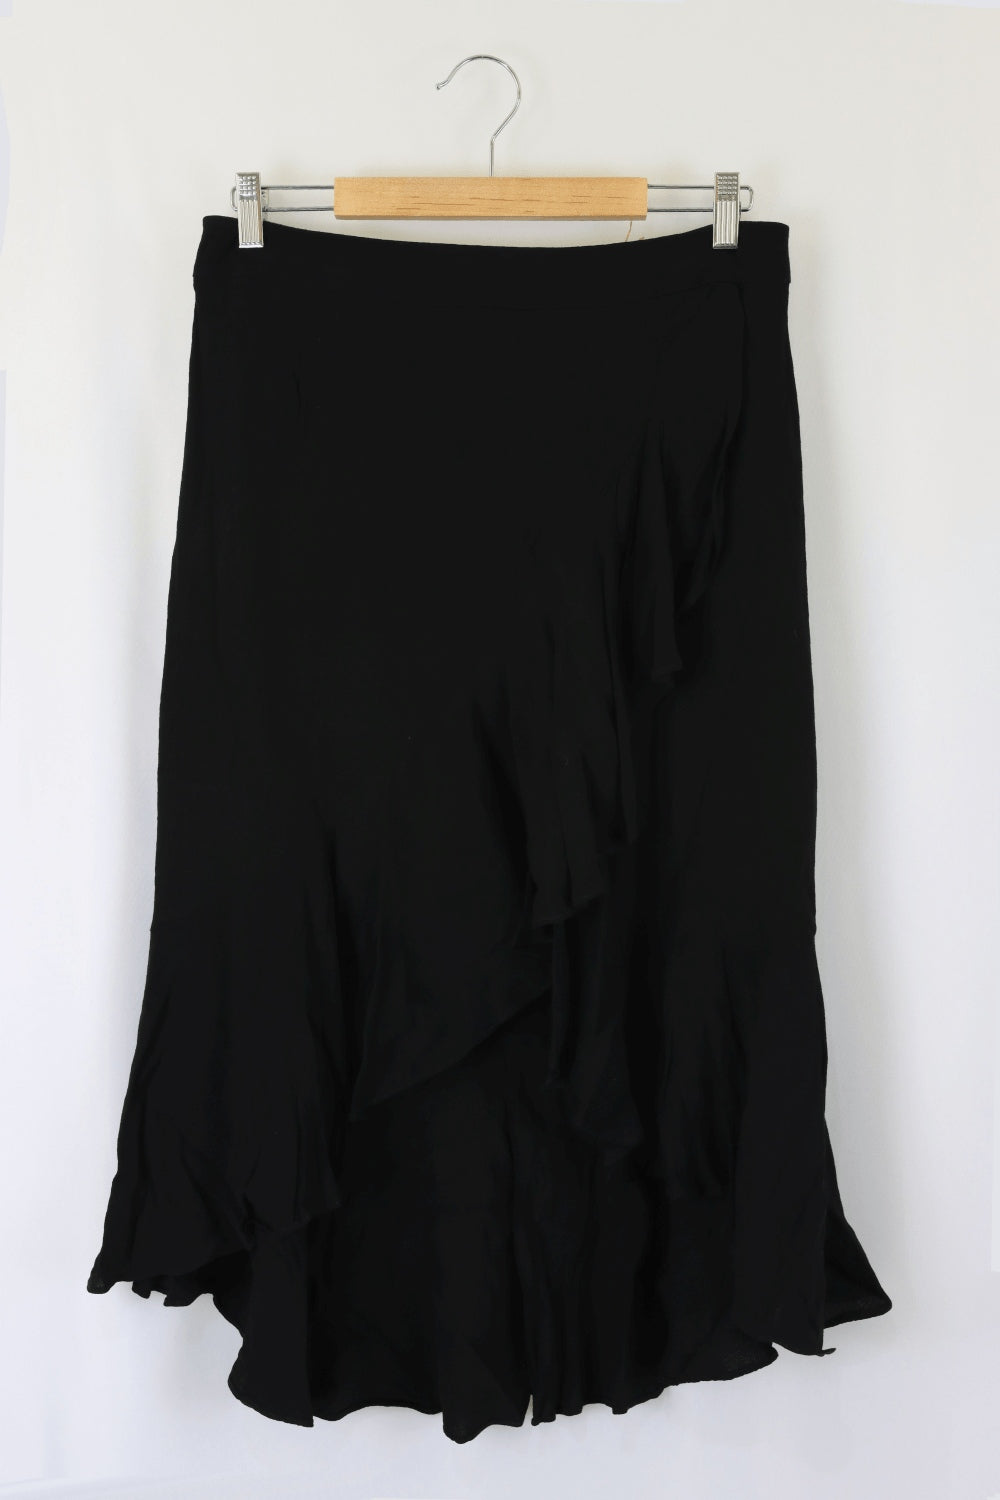 Portmans Black Skirt 12